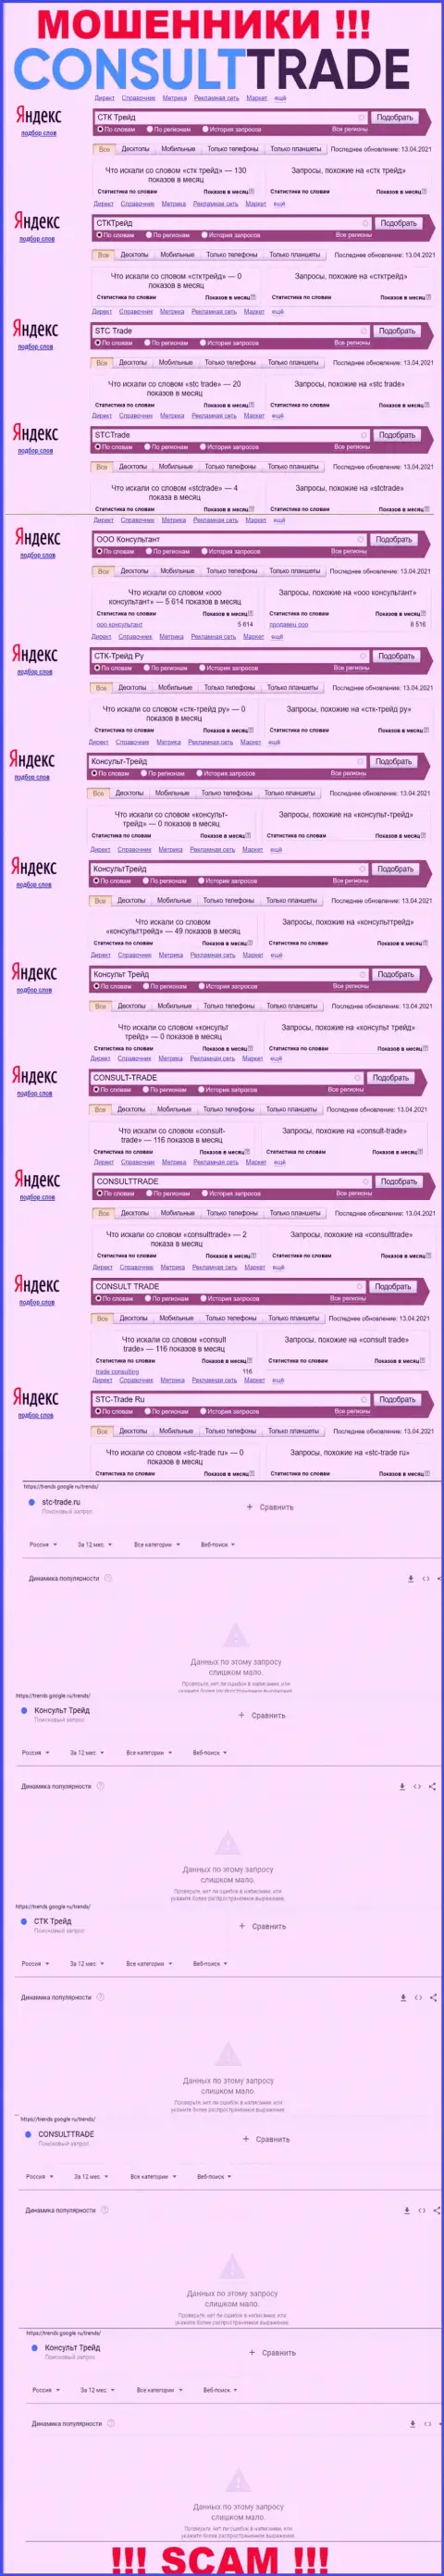 Скриншот итога онлайн-запросов по жульнической компании Консульт Трейд